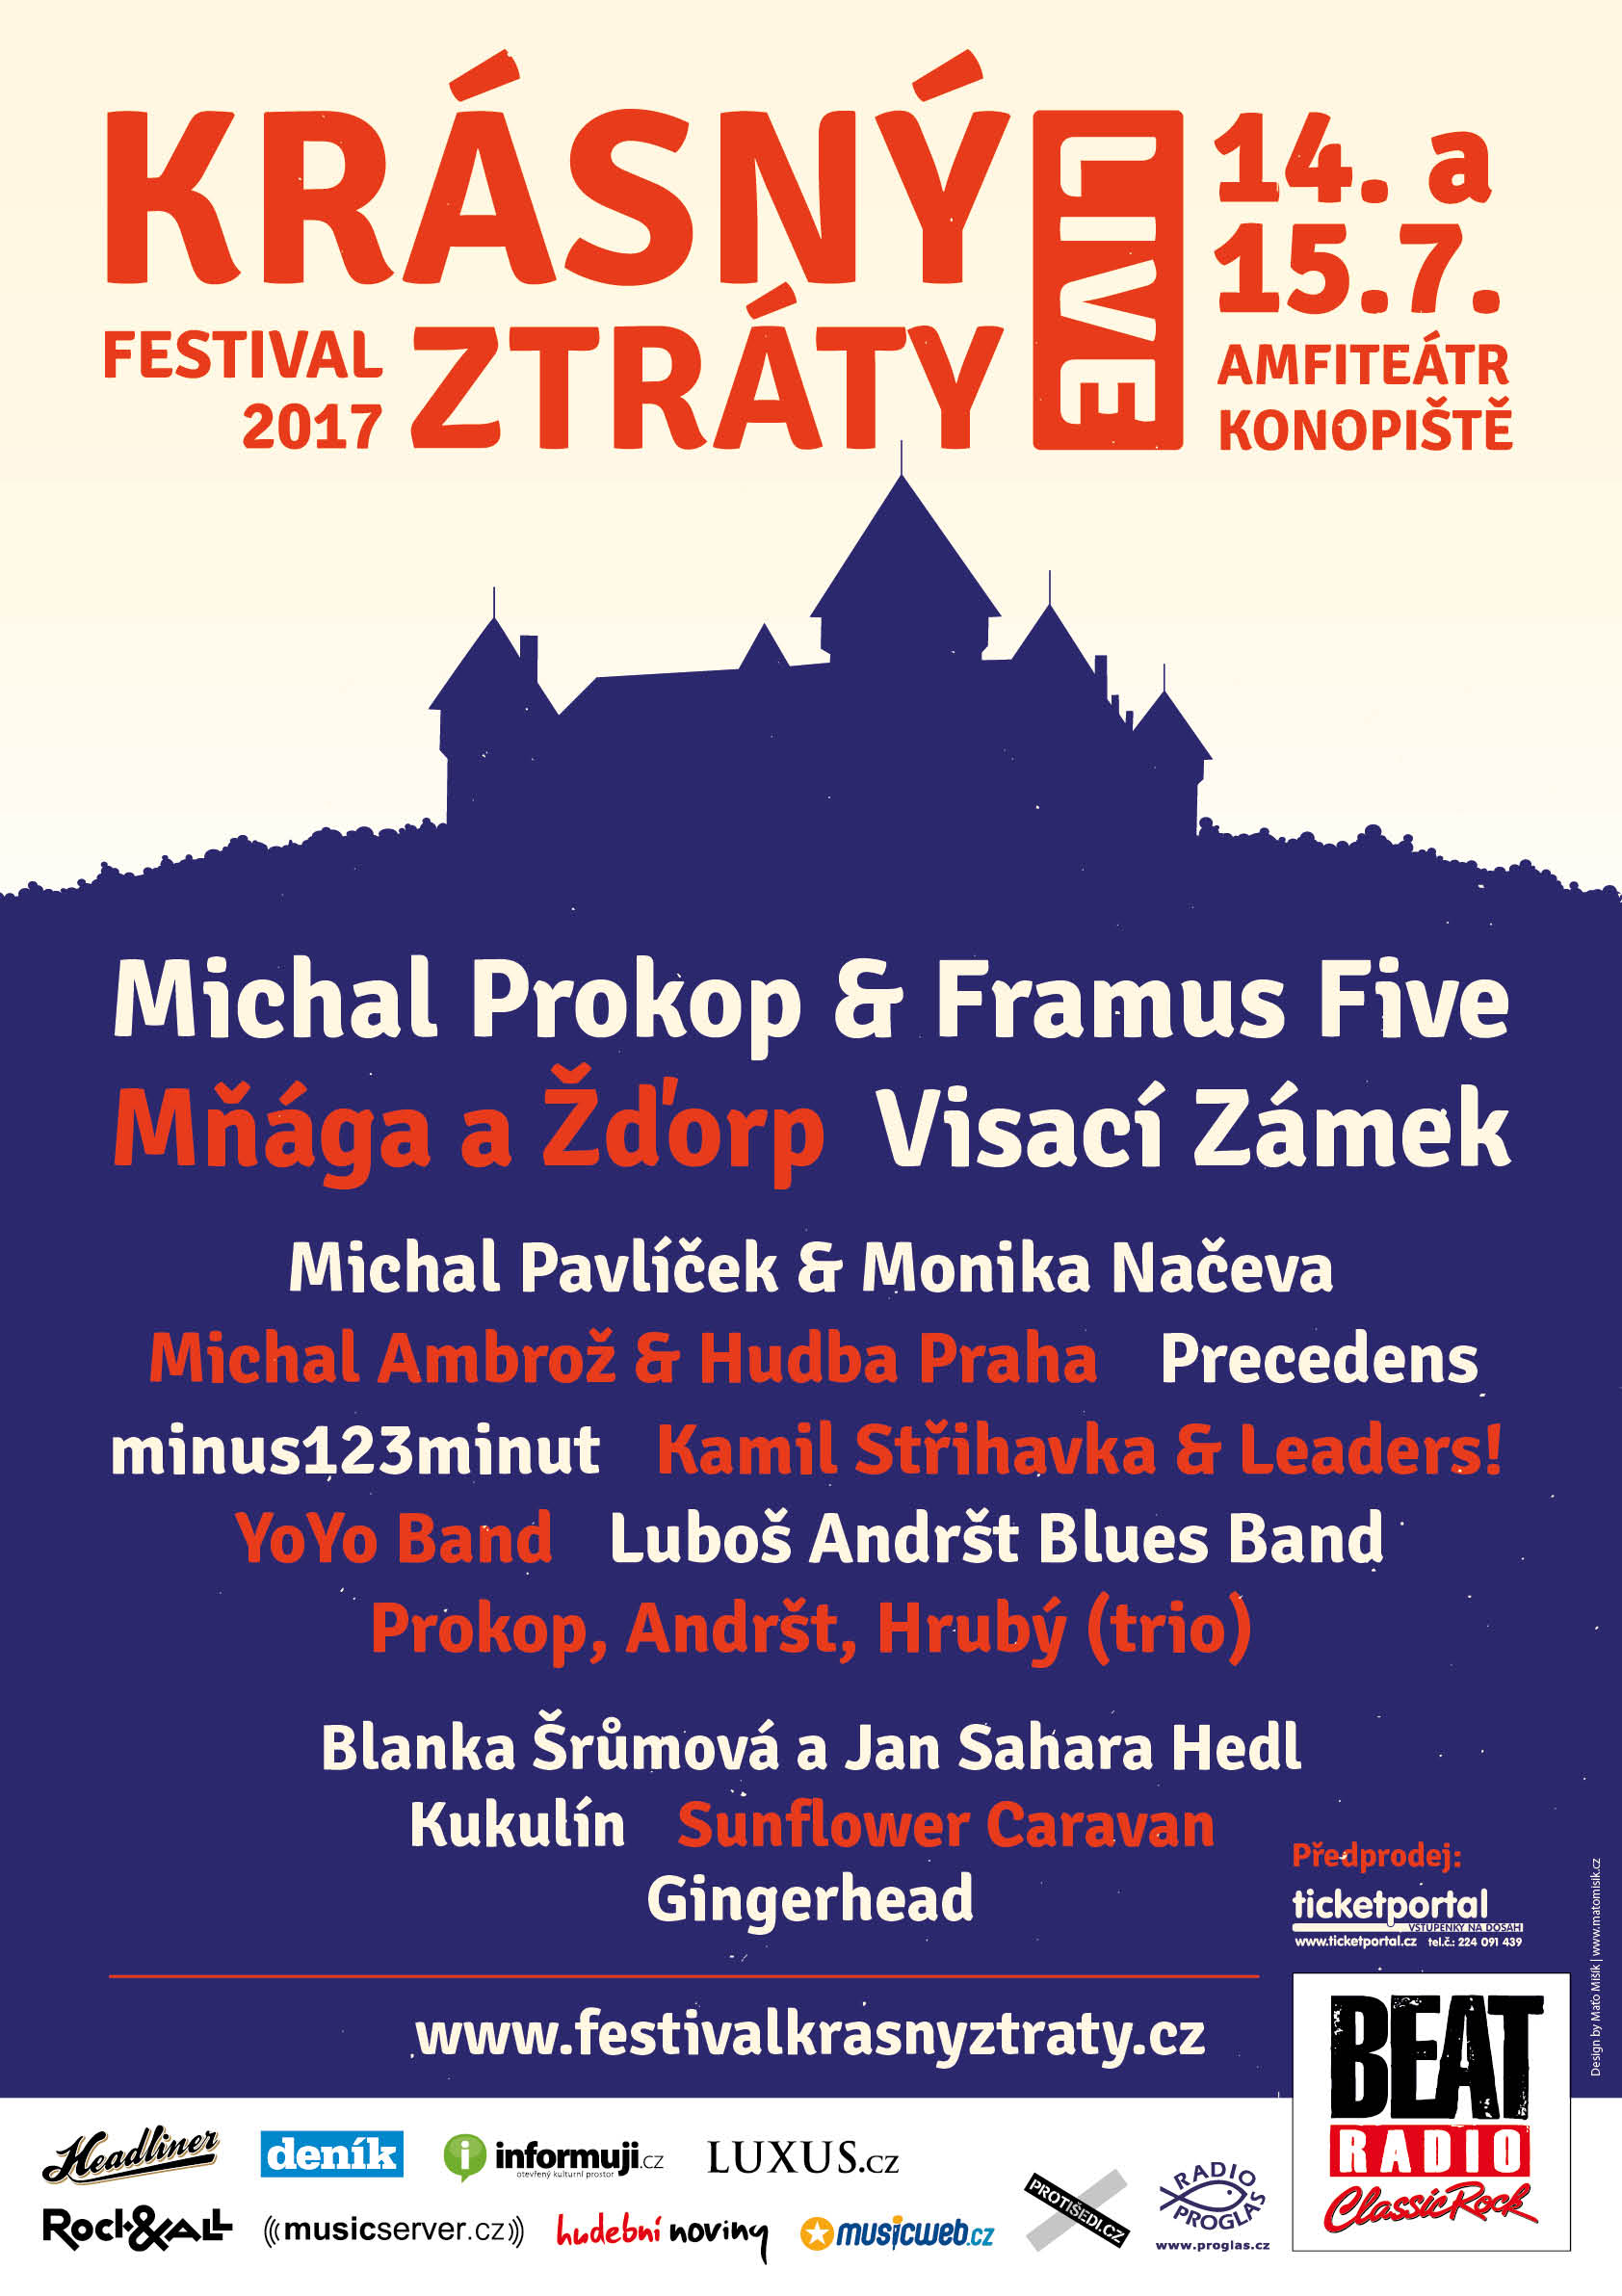 Headlinerem prvního dne festivalu Krásný ztráty bude Mňága a Žďorp